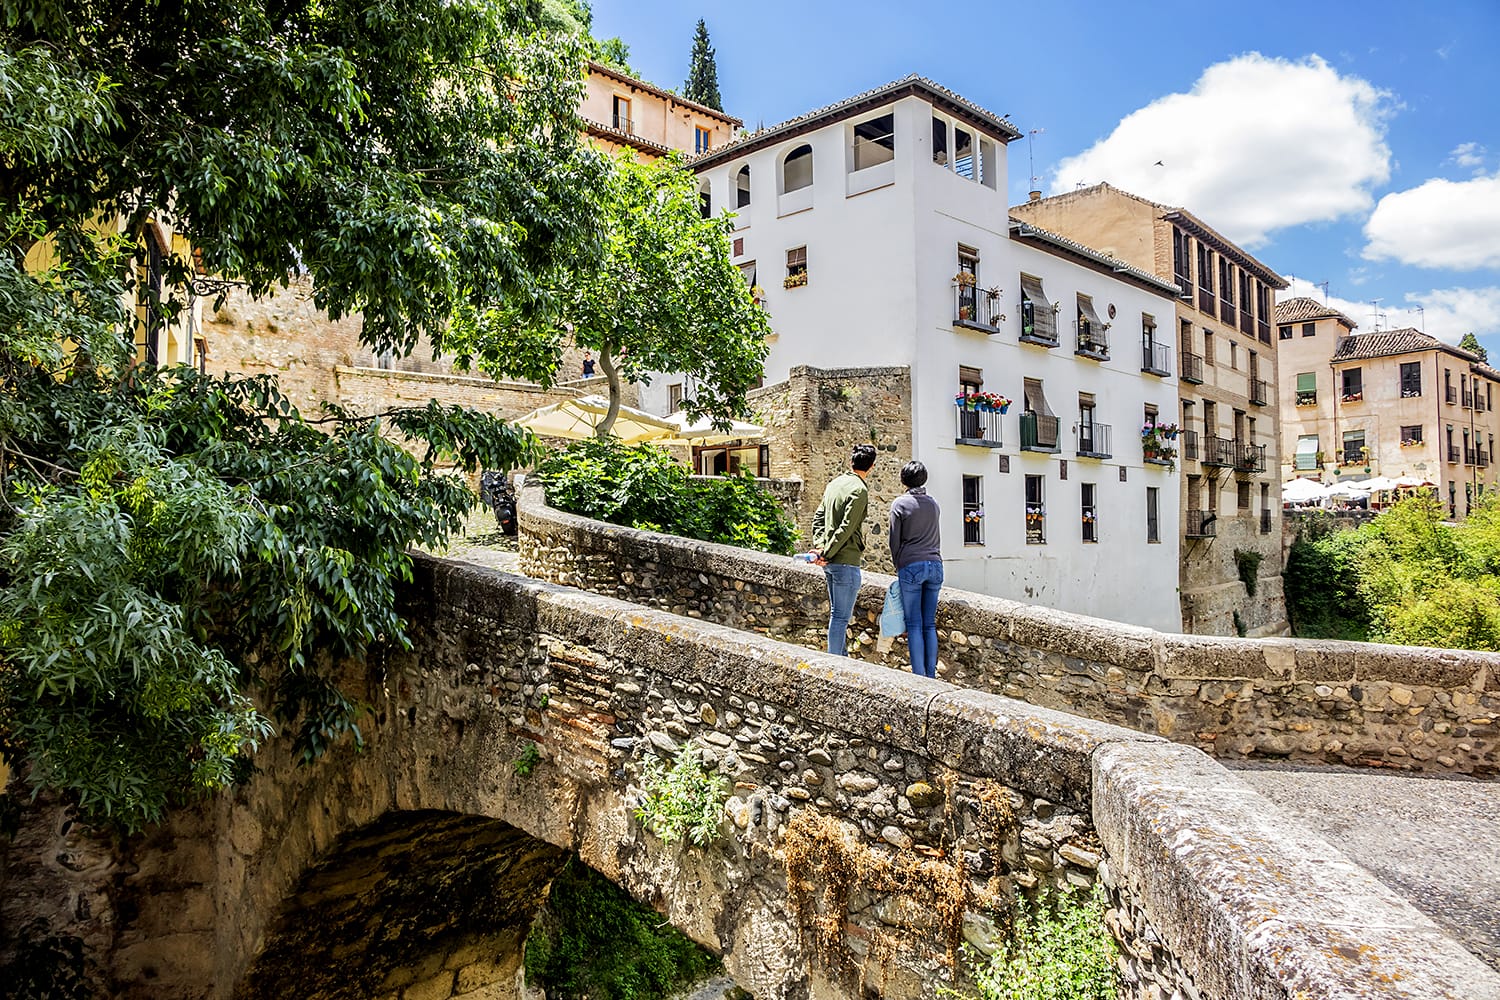 Darro Street (Carrera del Darro) is one of the most scenic walks in Granada, Spain